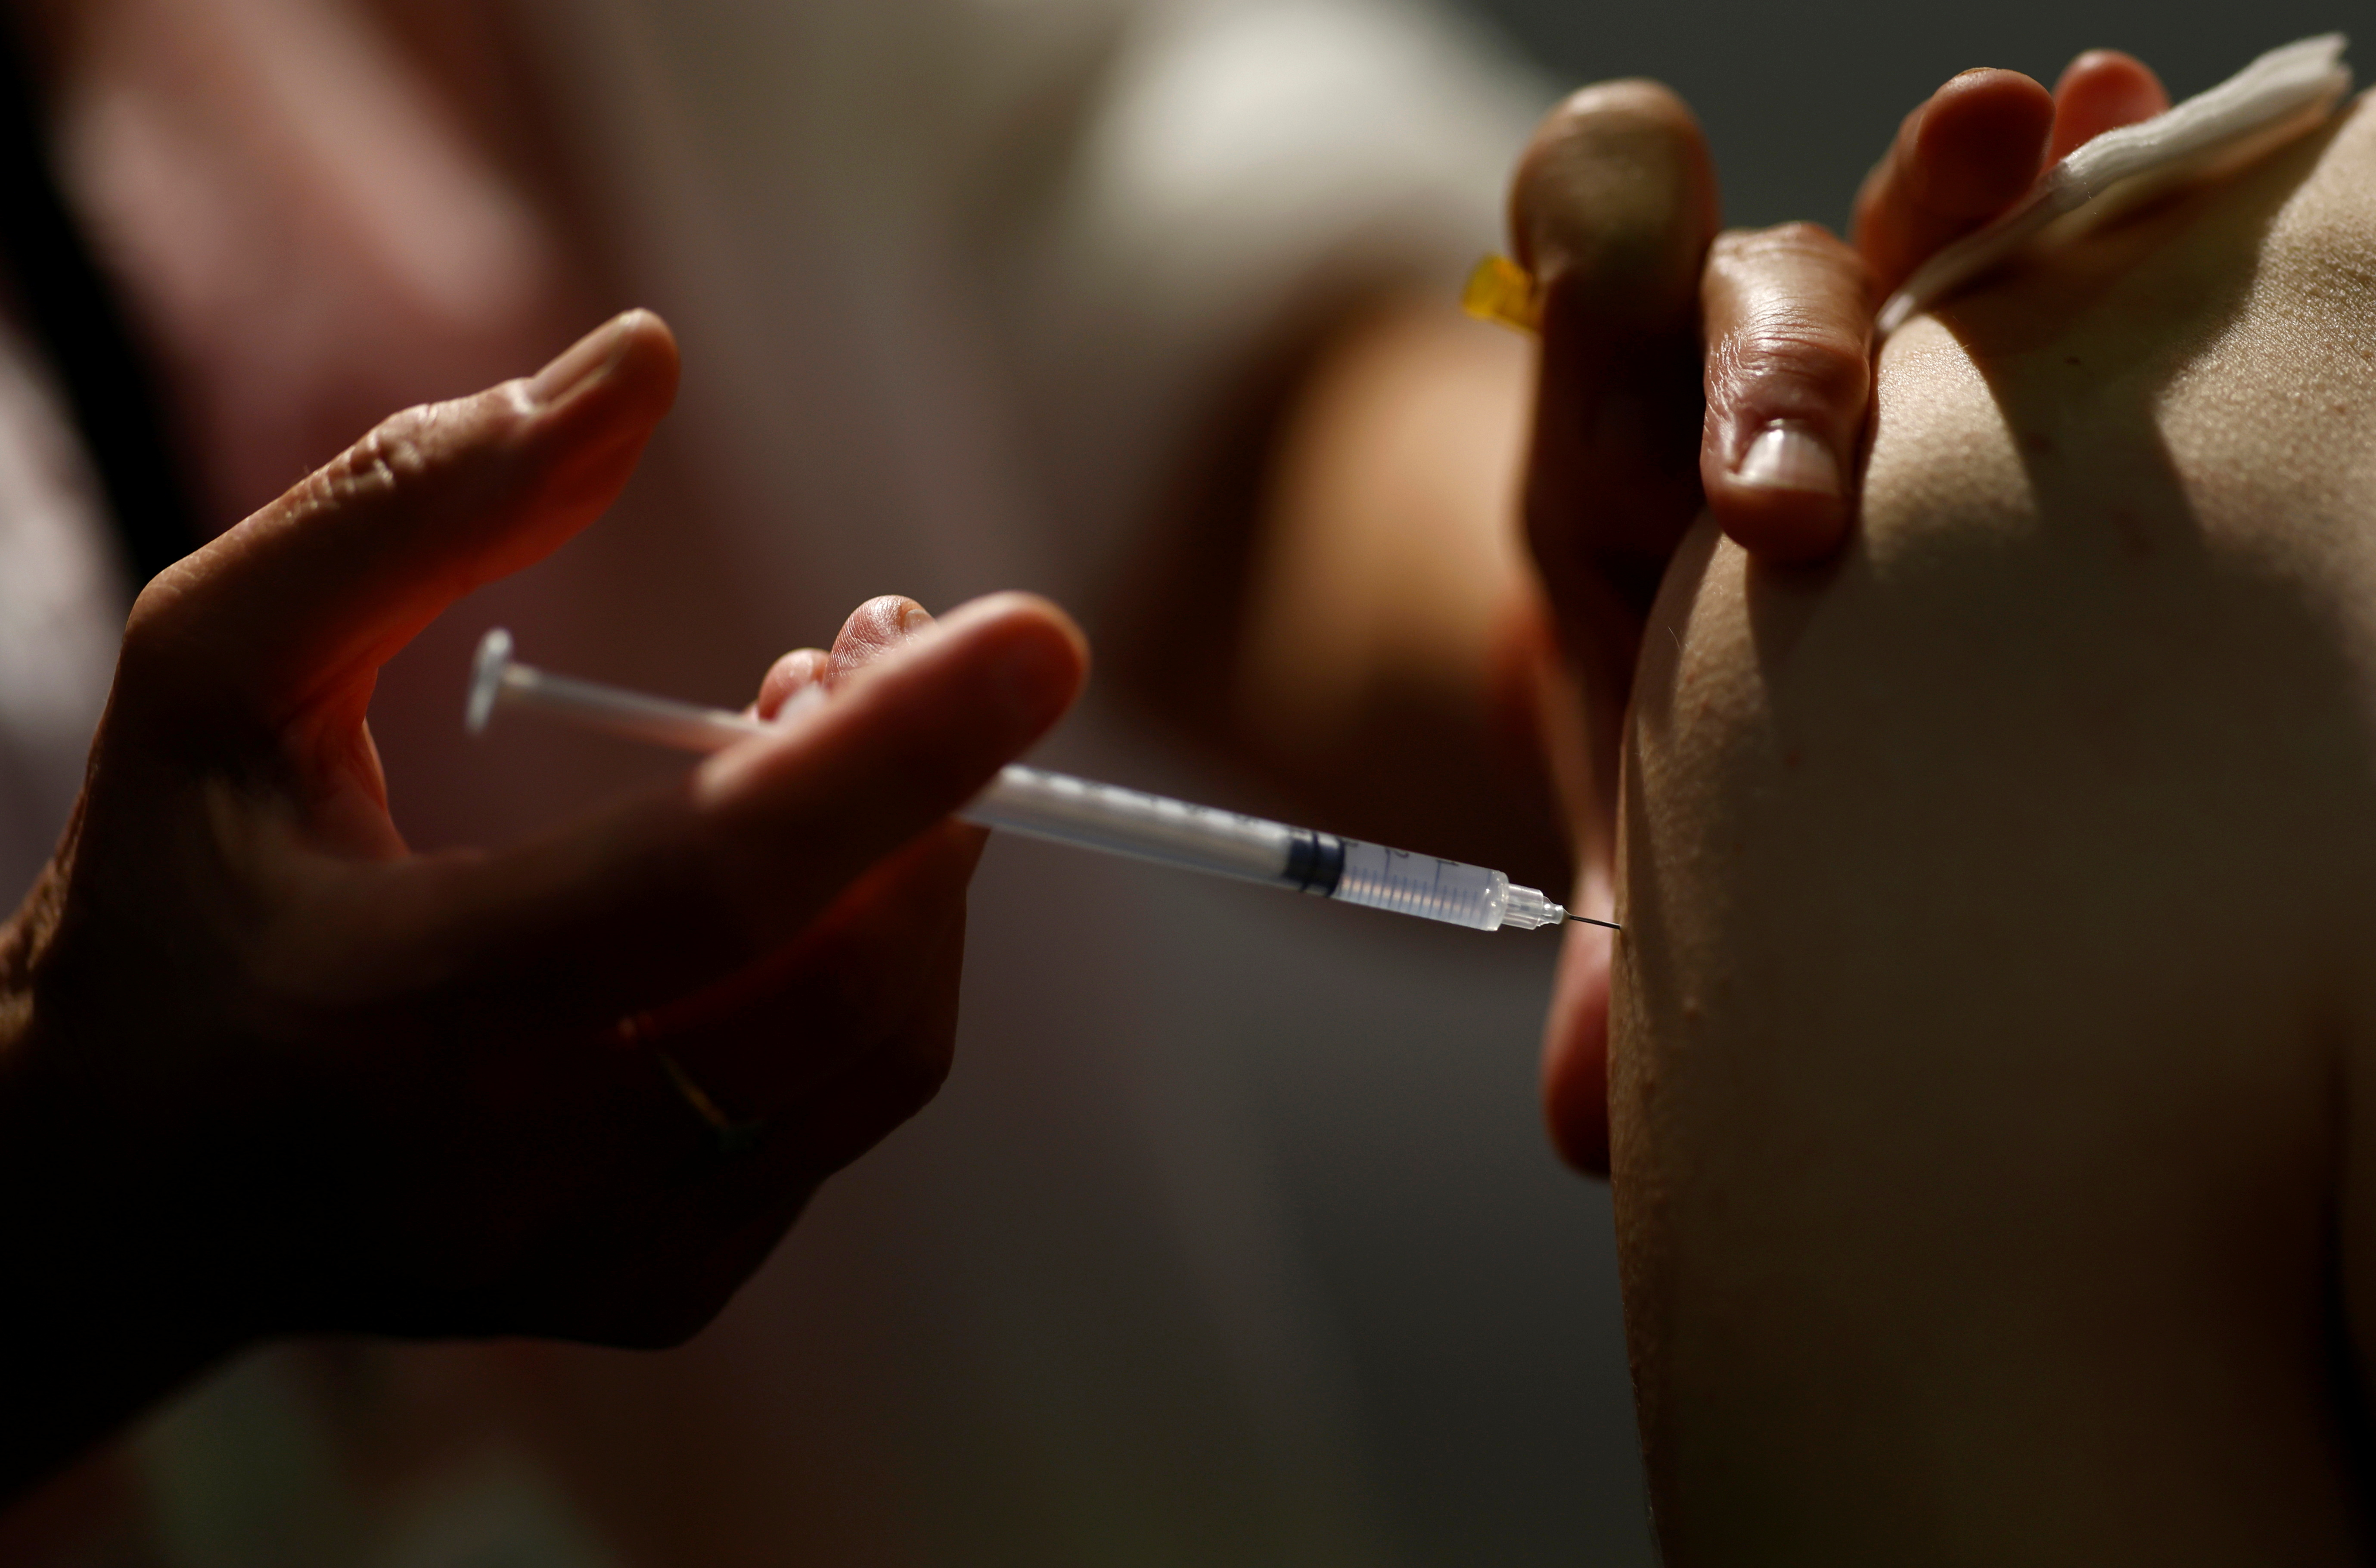 La aplicación de vacunas contra el coronavirus avanza a distinta velocidad en los países. En este sentido, China encabeza el ranking mundial de inoculación con 1.820.238.000 dosis aplicadas. Luego le siguen, India con 523.671.019 dosis y Estados Unidos con 353.205.544 dosis (REUTERS)